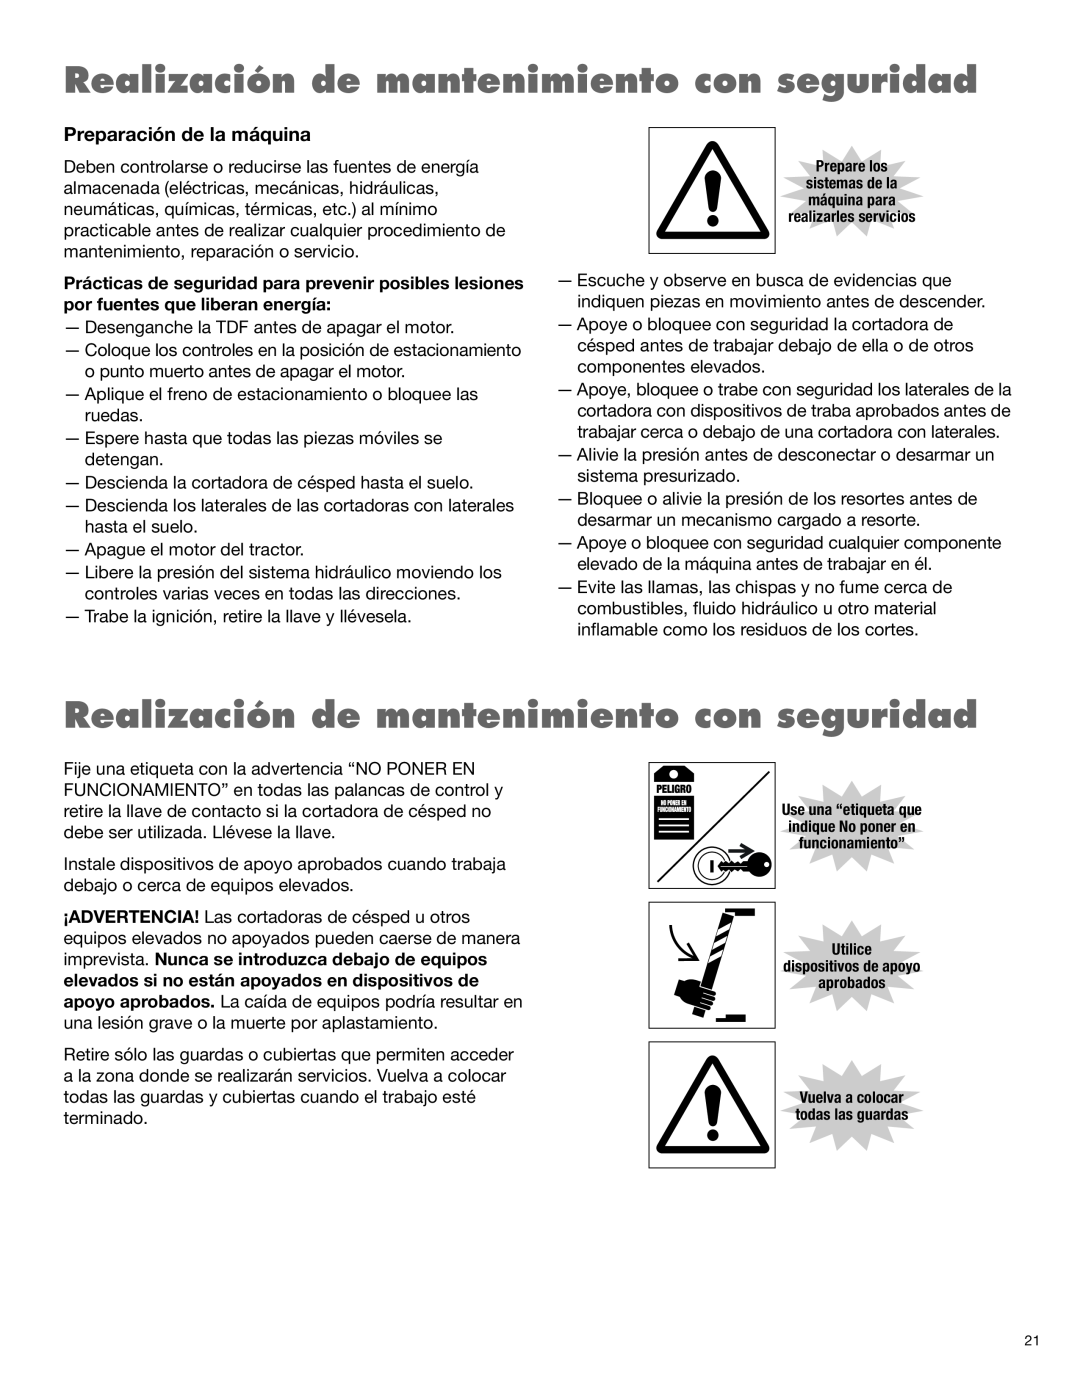 Alamo 1900 manual Realización de mantenimiento con seguridad, Preparación de la máquina 